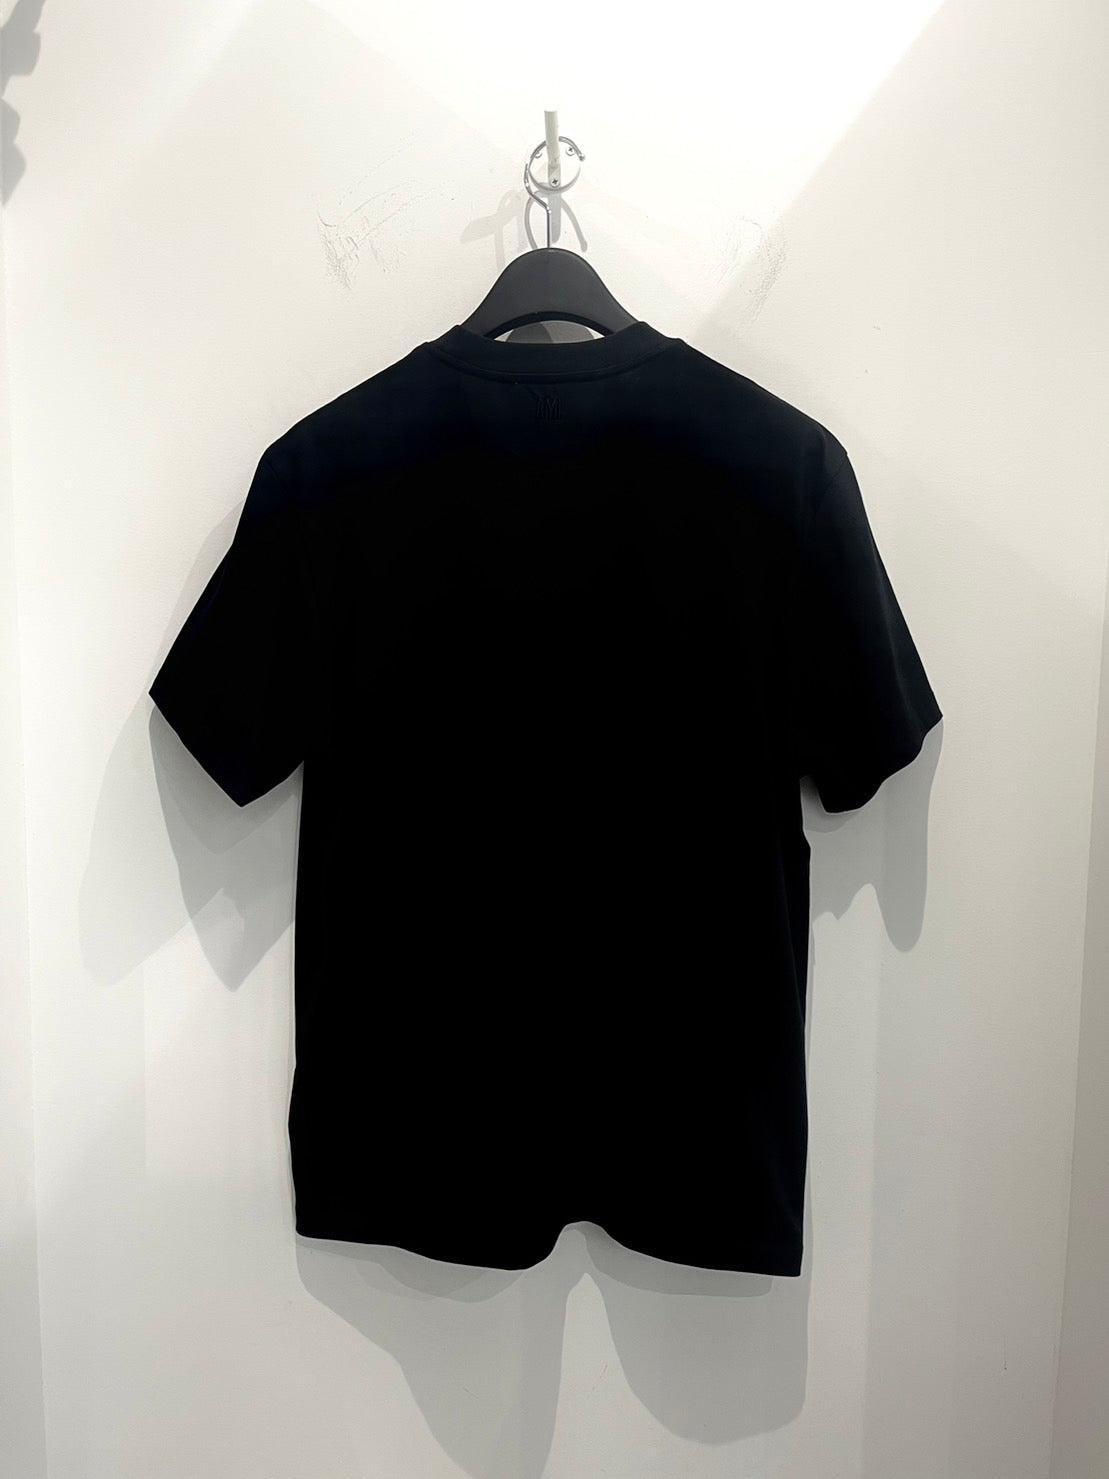 AMI PARIS/アミパリス Tシャツ <BFUTS005> ブラック(黒)